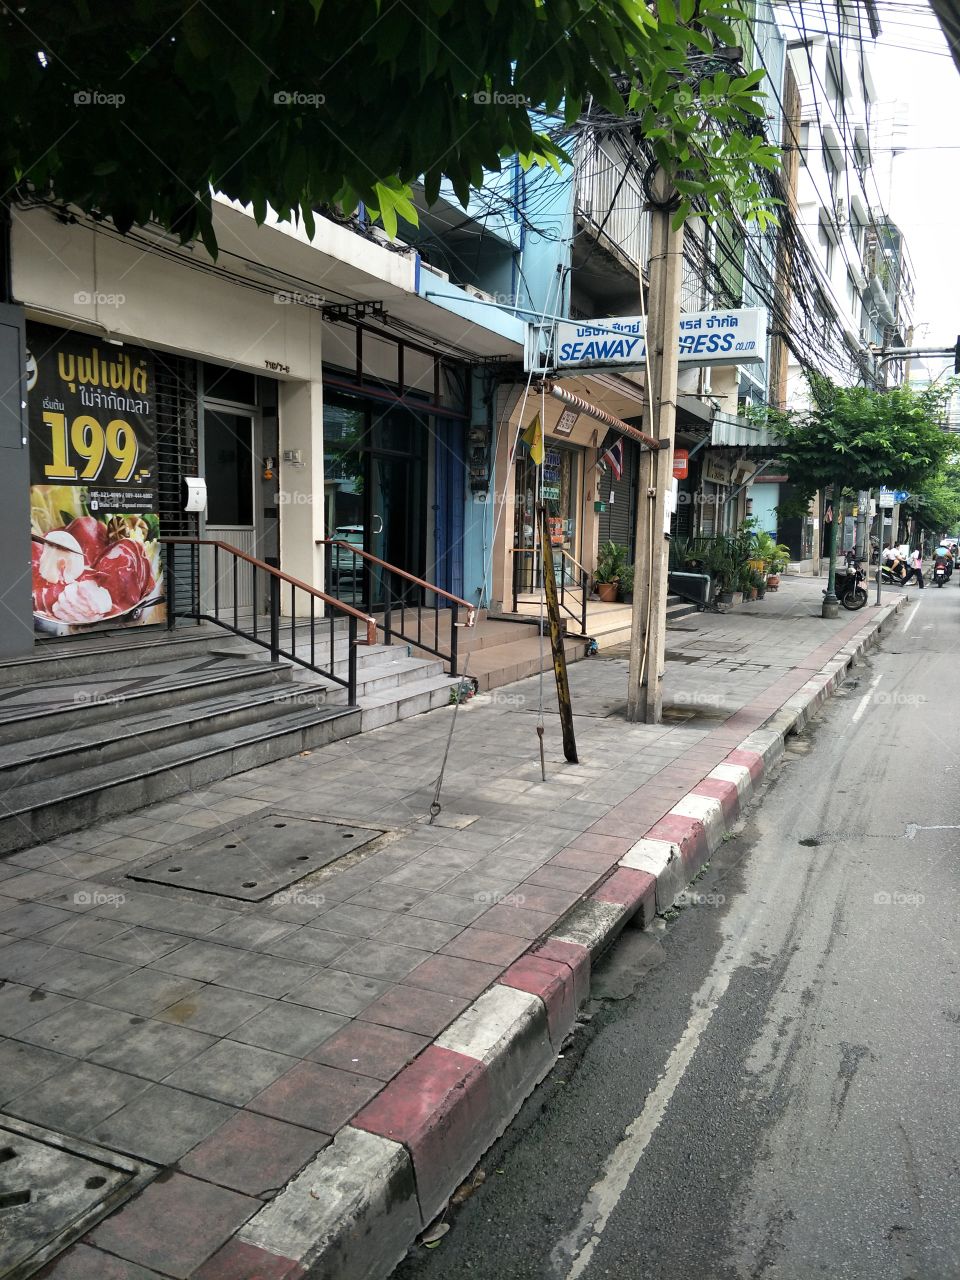 Nang Linchee Road, Bangkok. 01/10/19